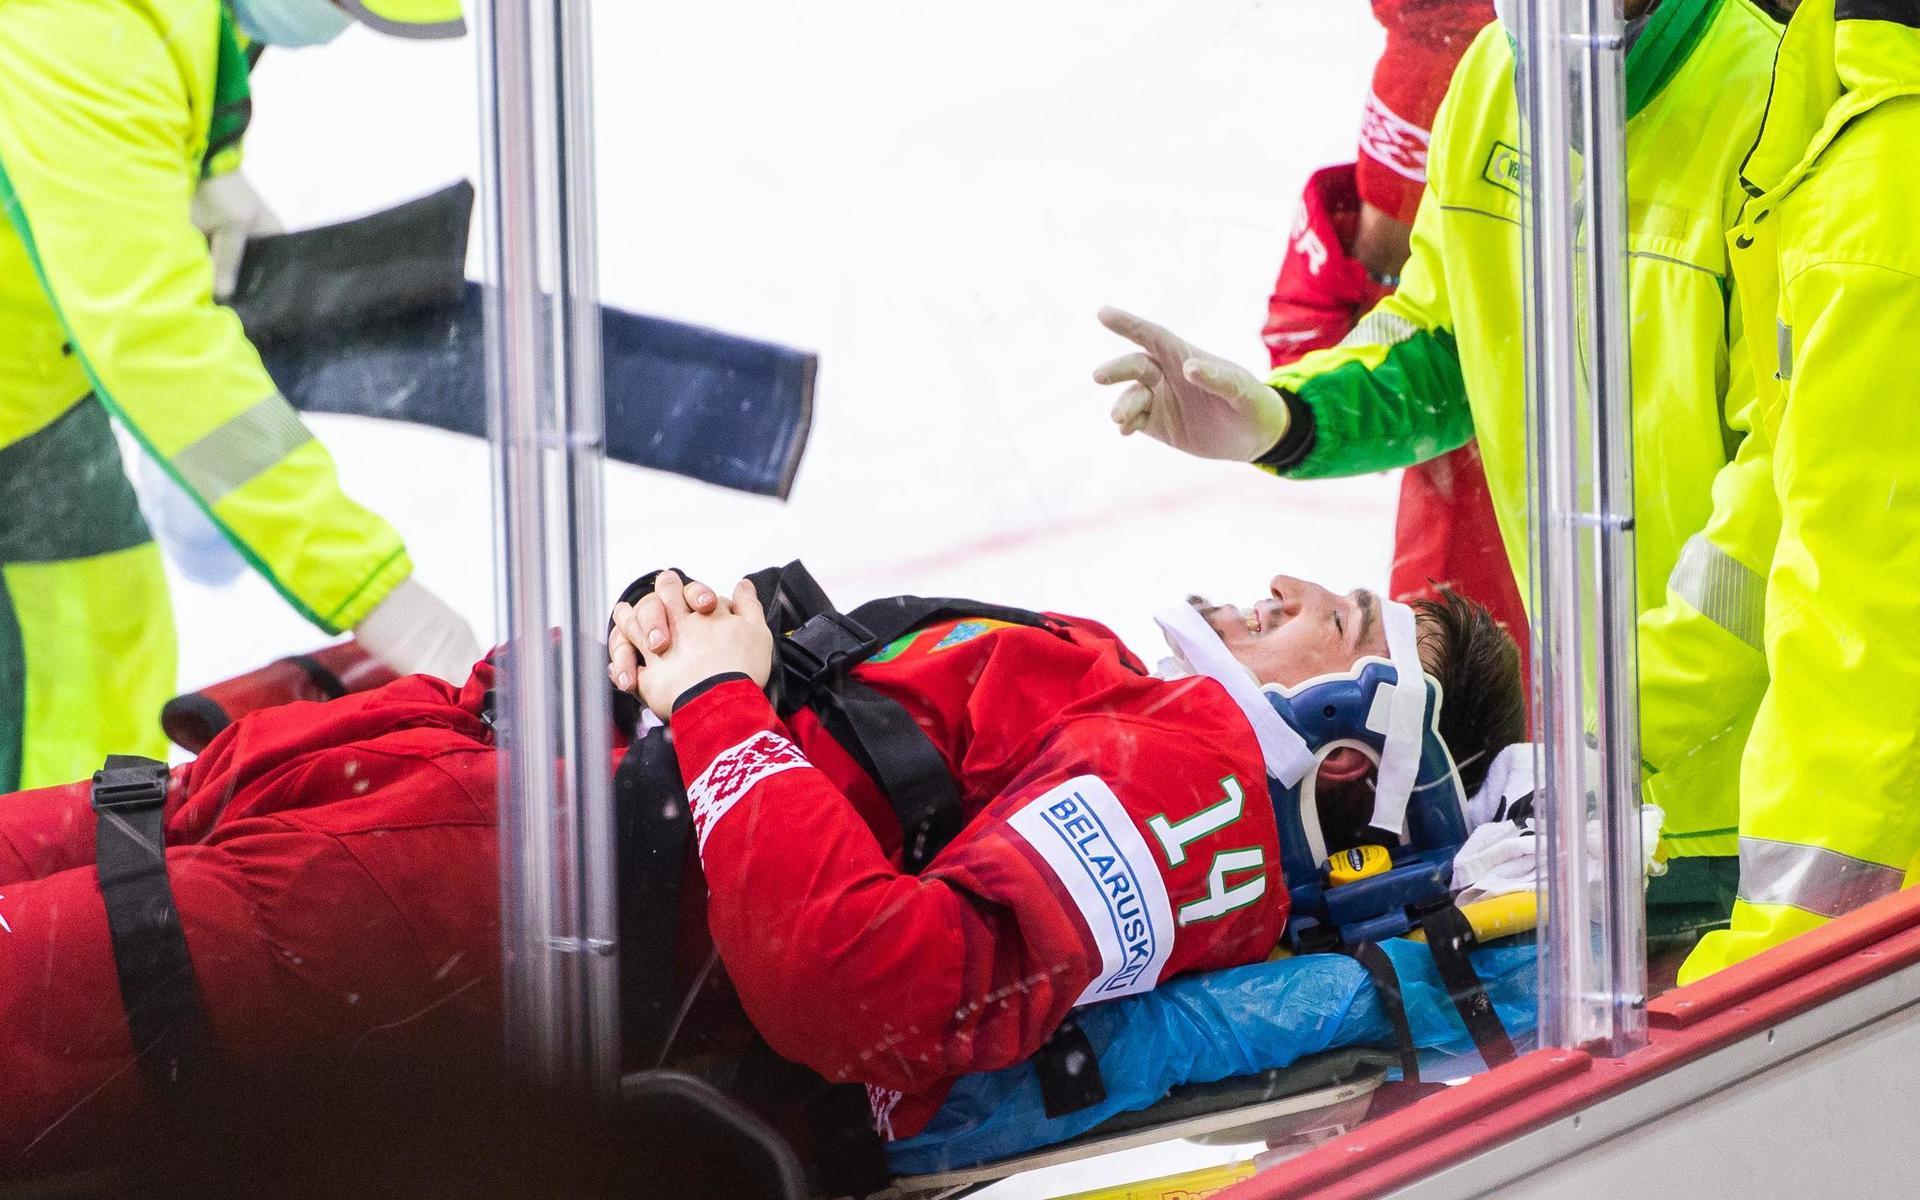 Yevgeni Lisovets rullades ut på bår efter en otäck olycka i matchen mot Sverige.